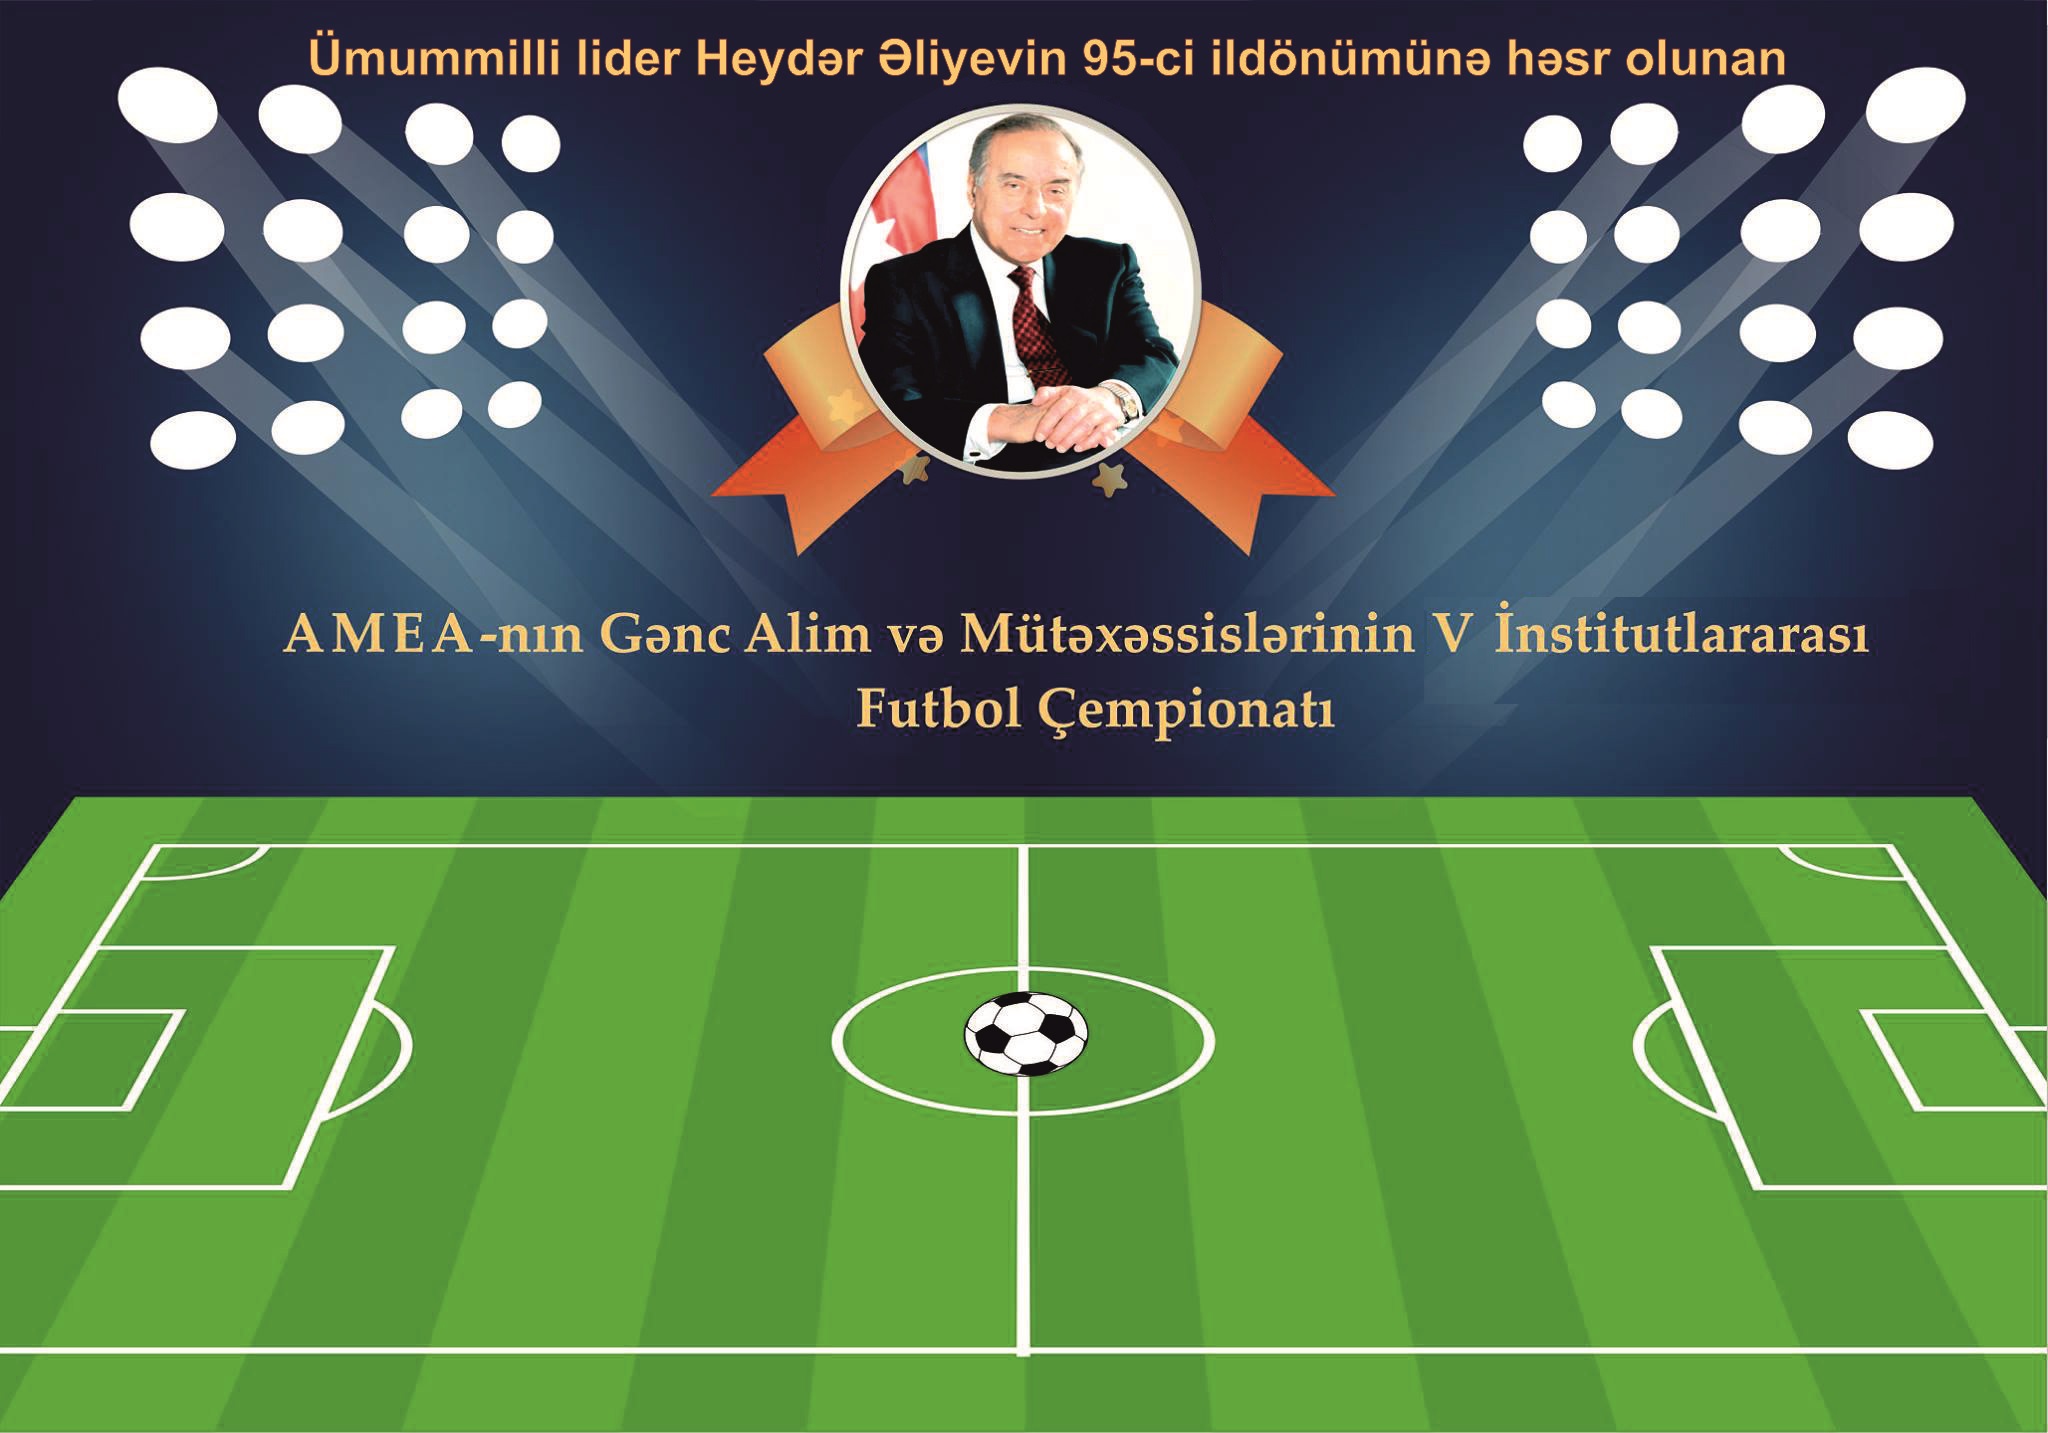 AMEA gənc alim və mütəxəssislərin institutlararası V futbol çempionatında III turun oyunları davam edir